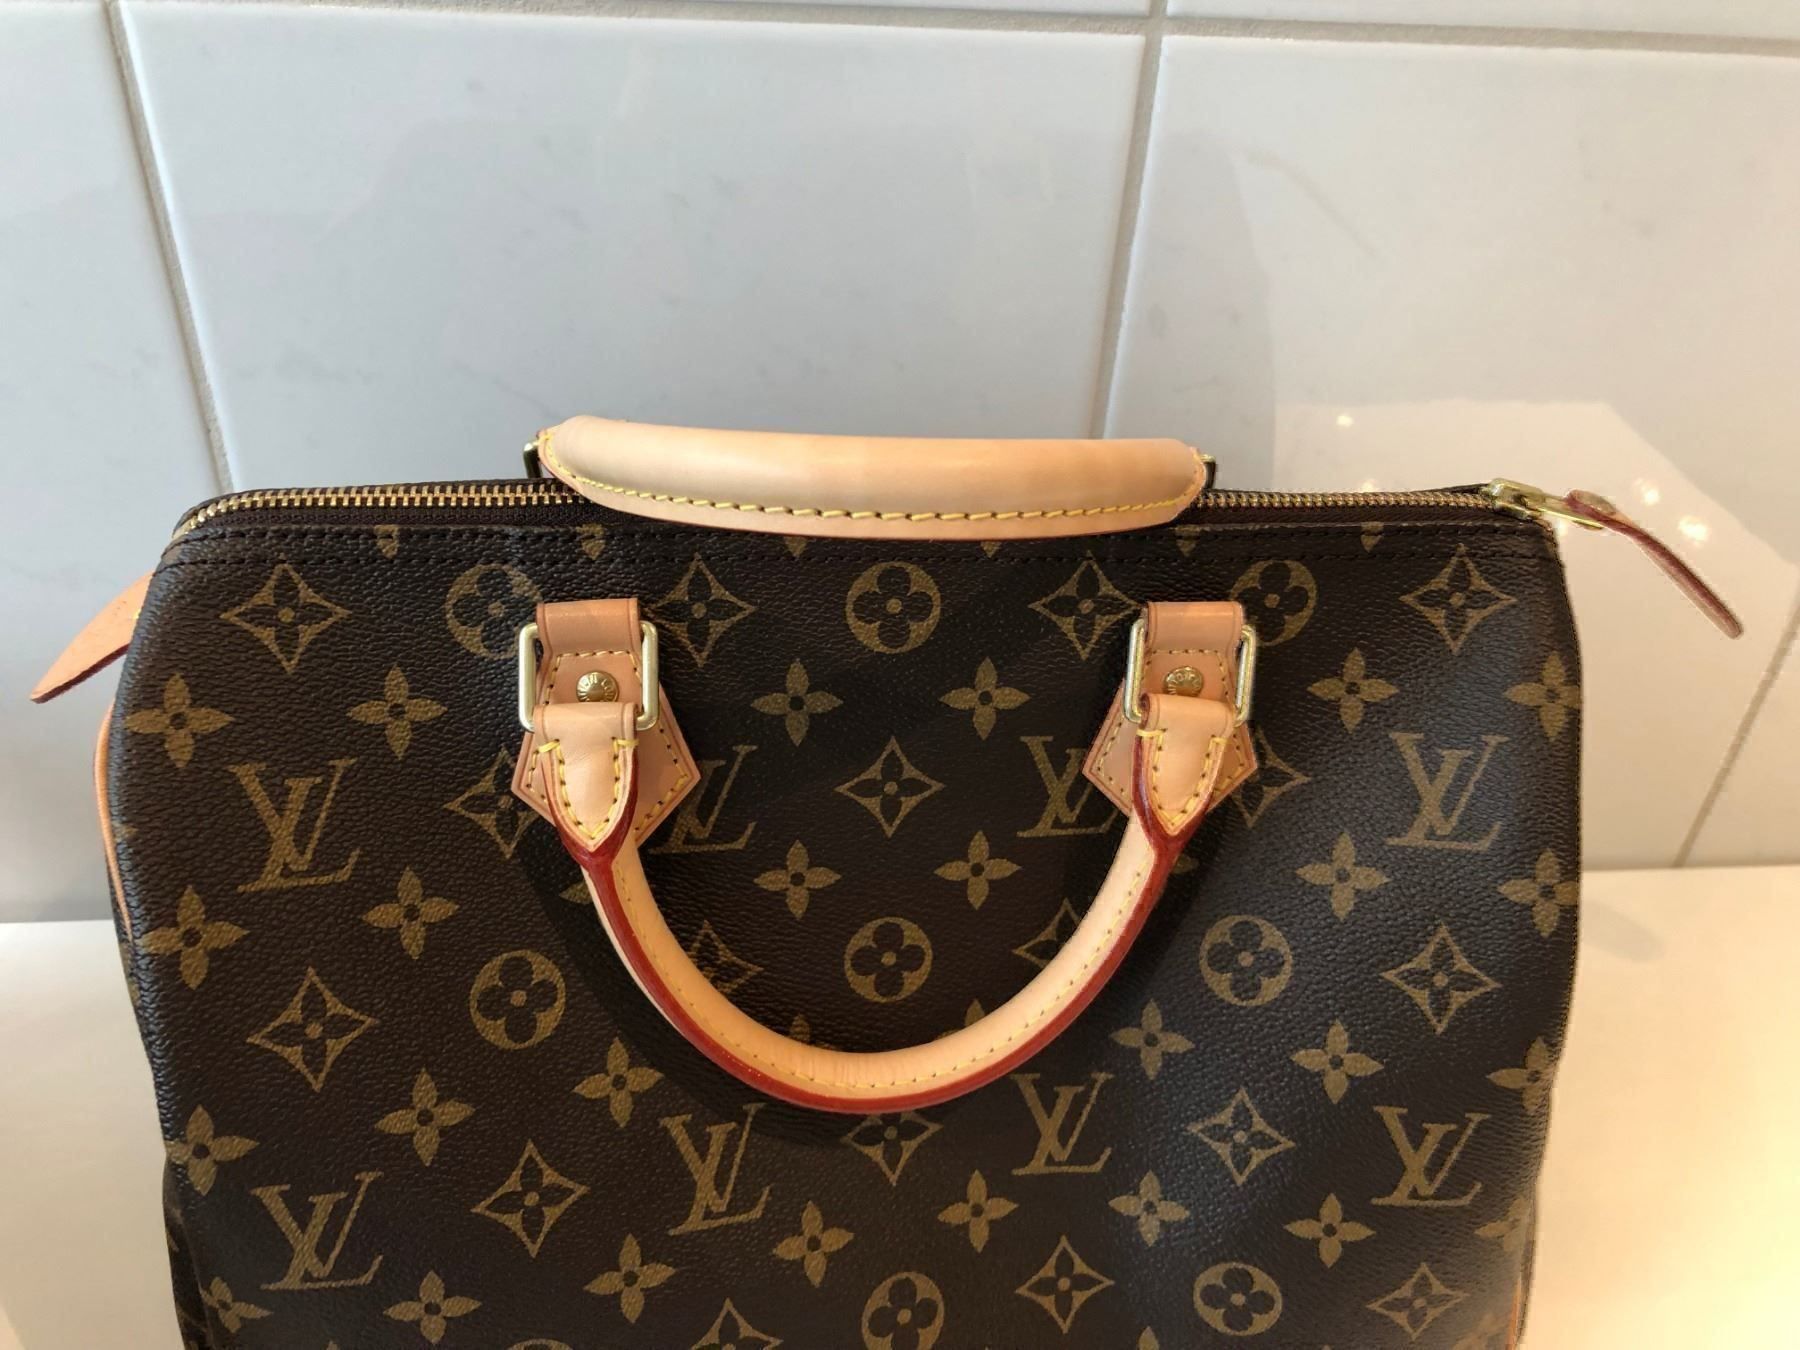 Zoomoni Premium Bag Organizer for LV Louis Vuitton Speedy 22